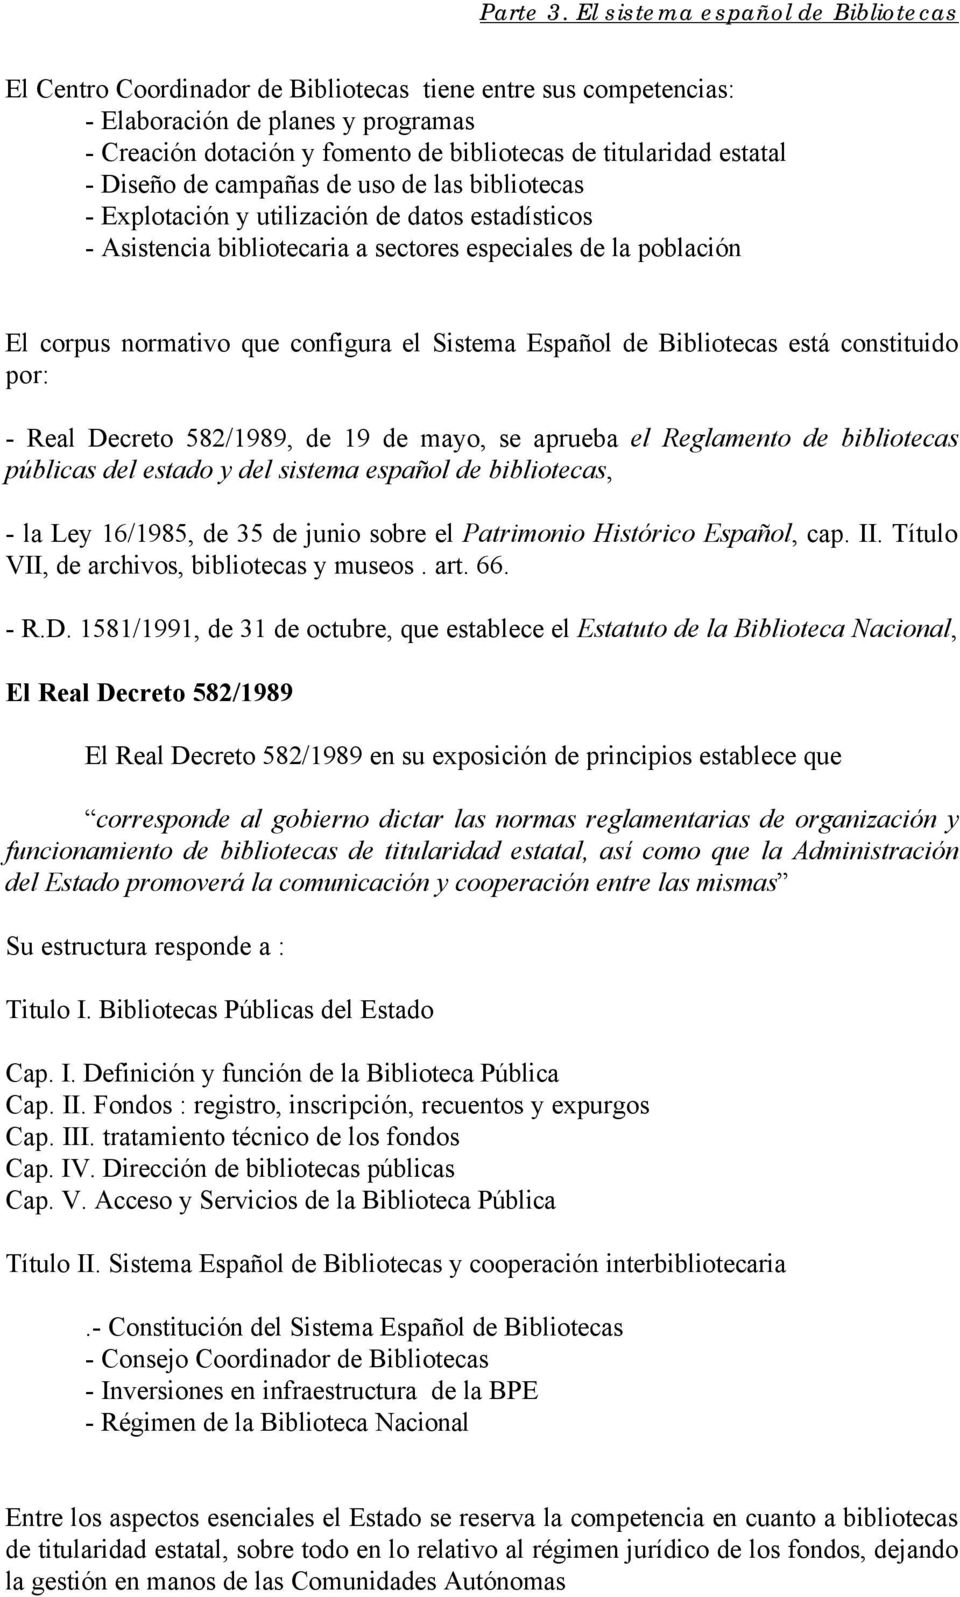 Bibliotecas está constituido por: - Real Decreto 582/1989, de 19 de mayo, se aprueba el Reglamento de bibliotecas públicas del estado y del sistema español de bibliotecas, - la Ley 16/1985, de 35 de